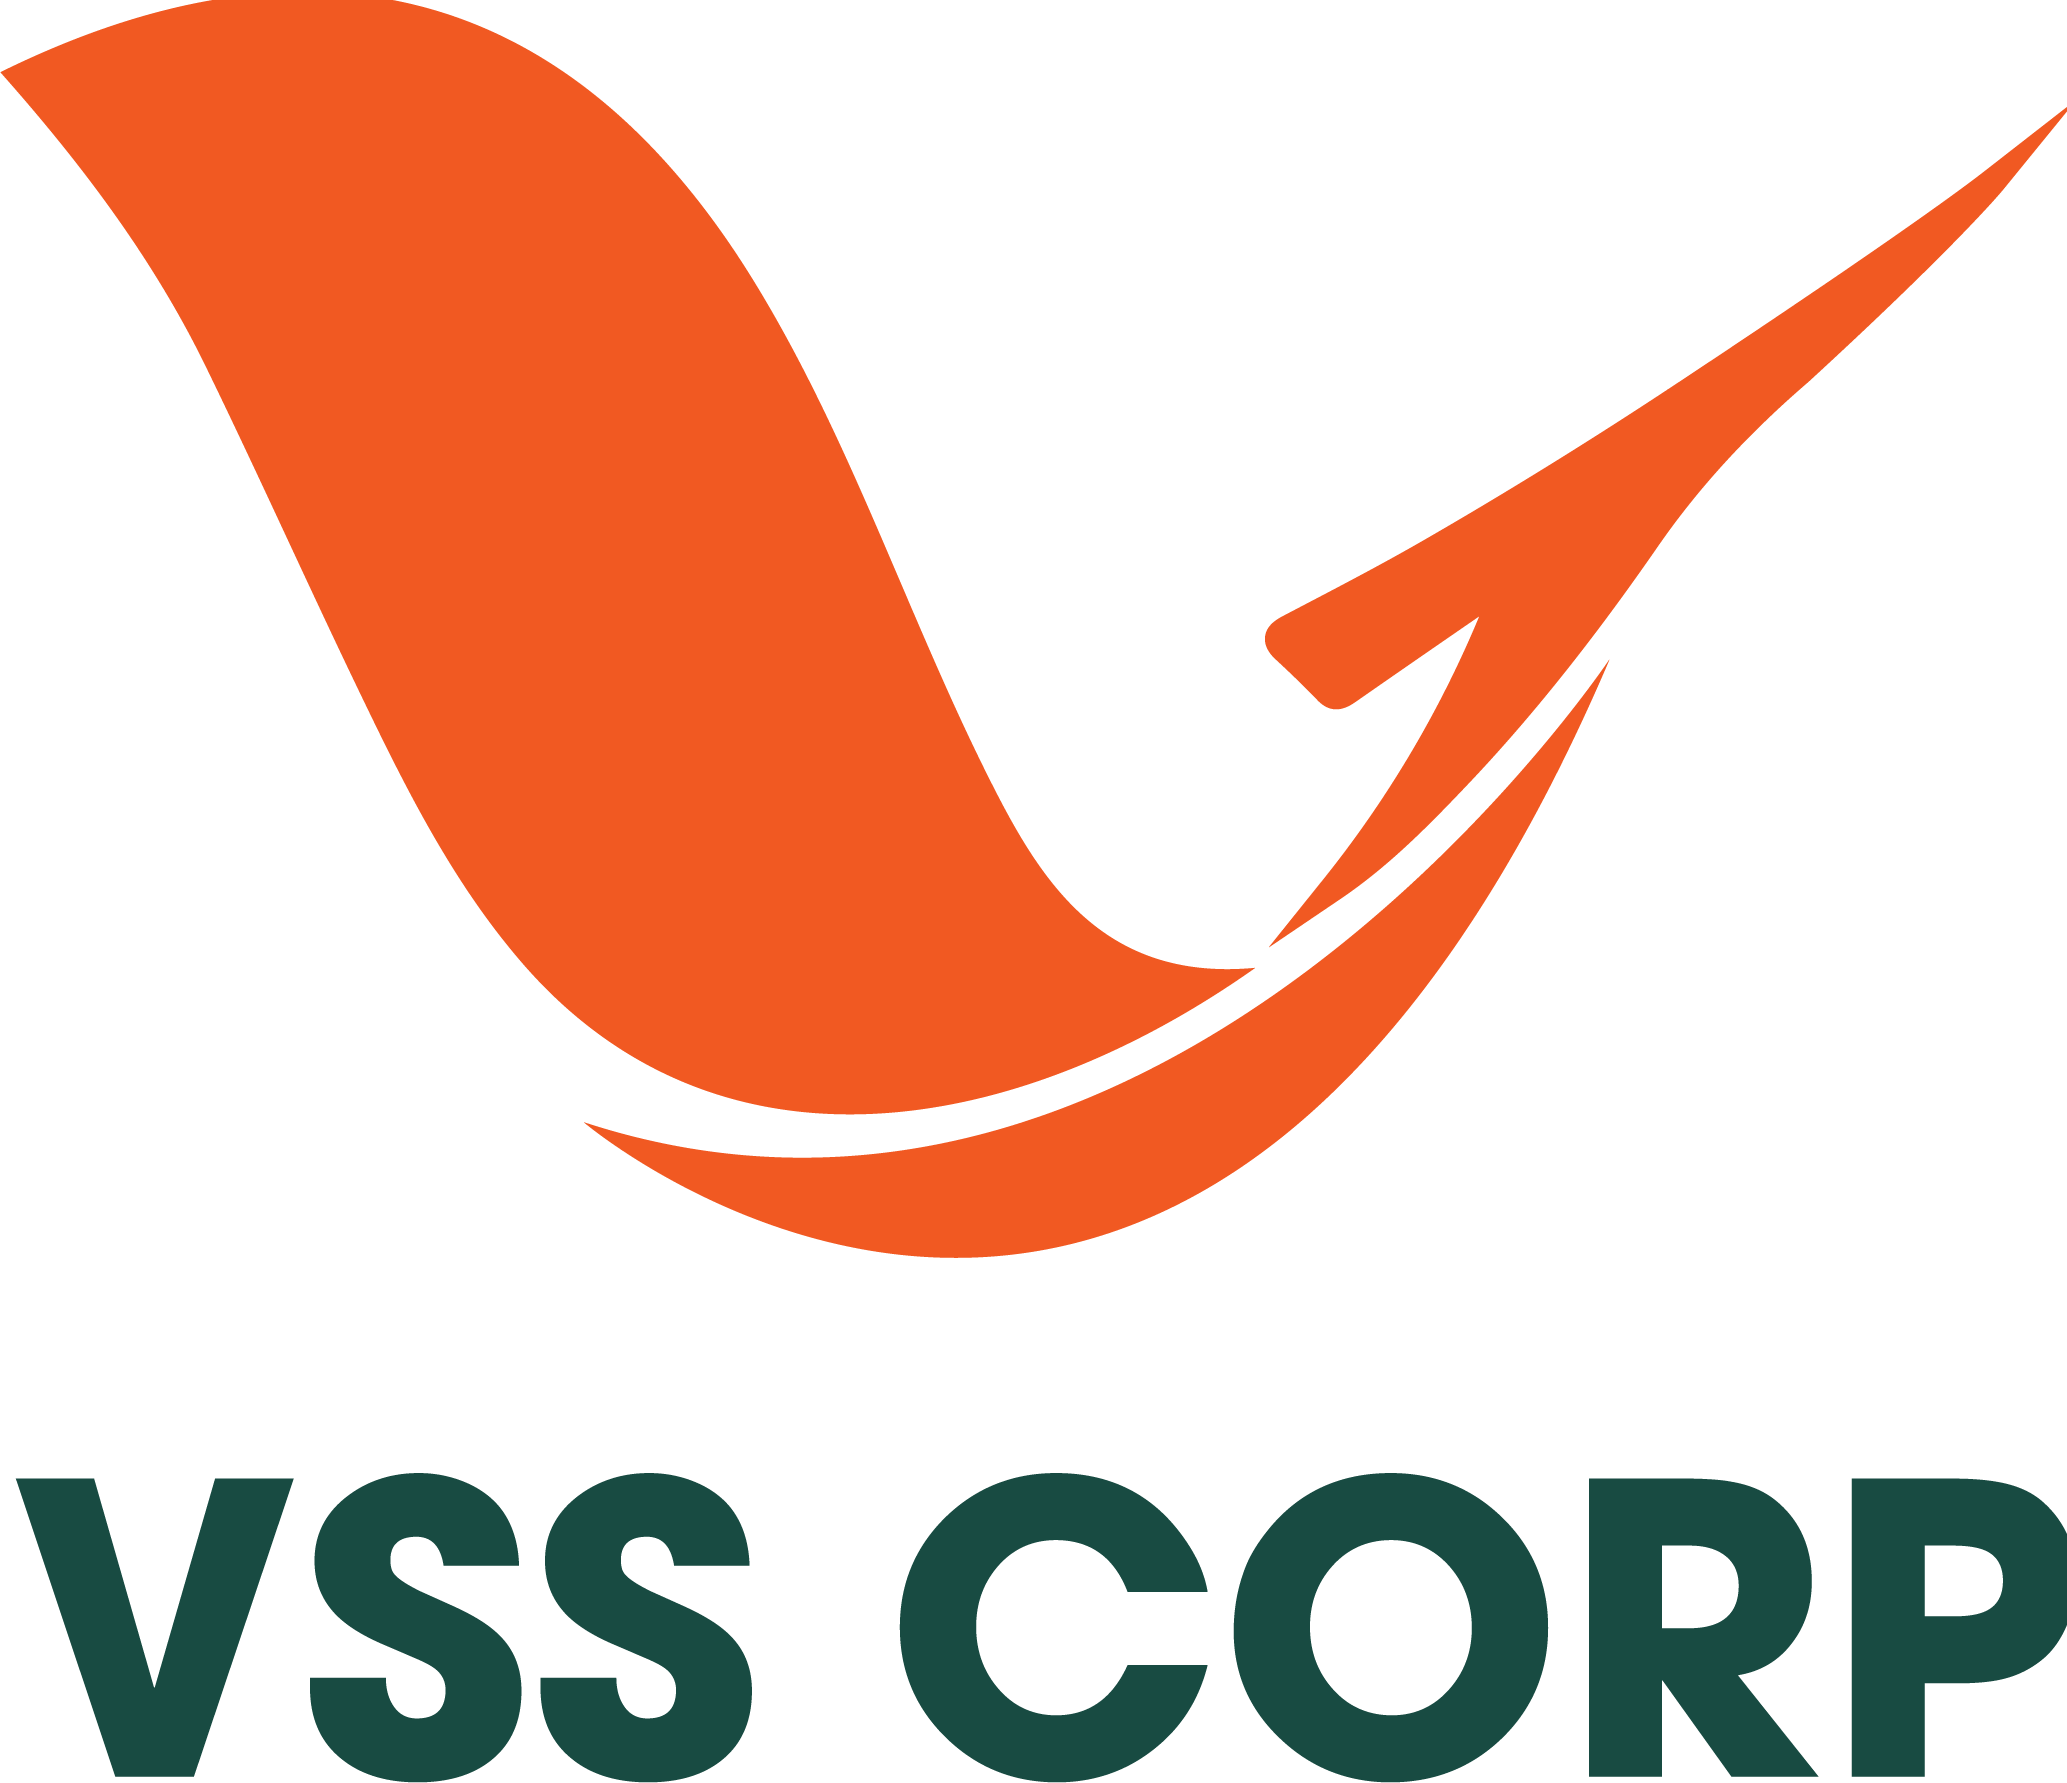 VSS Corp - Marketing Tổng thể doanh nghiệp